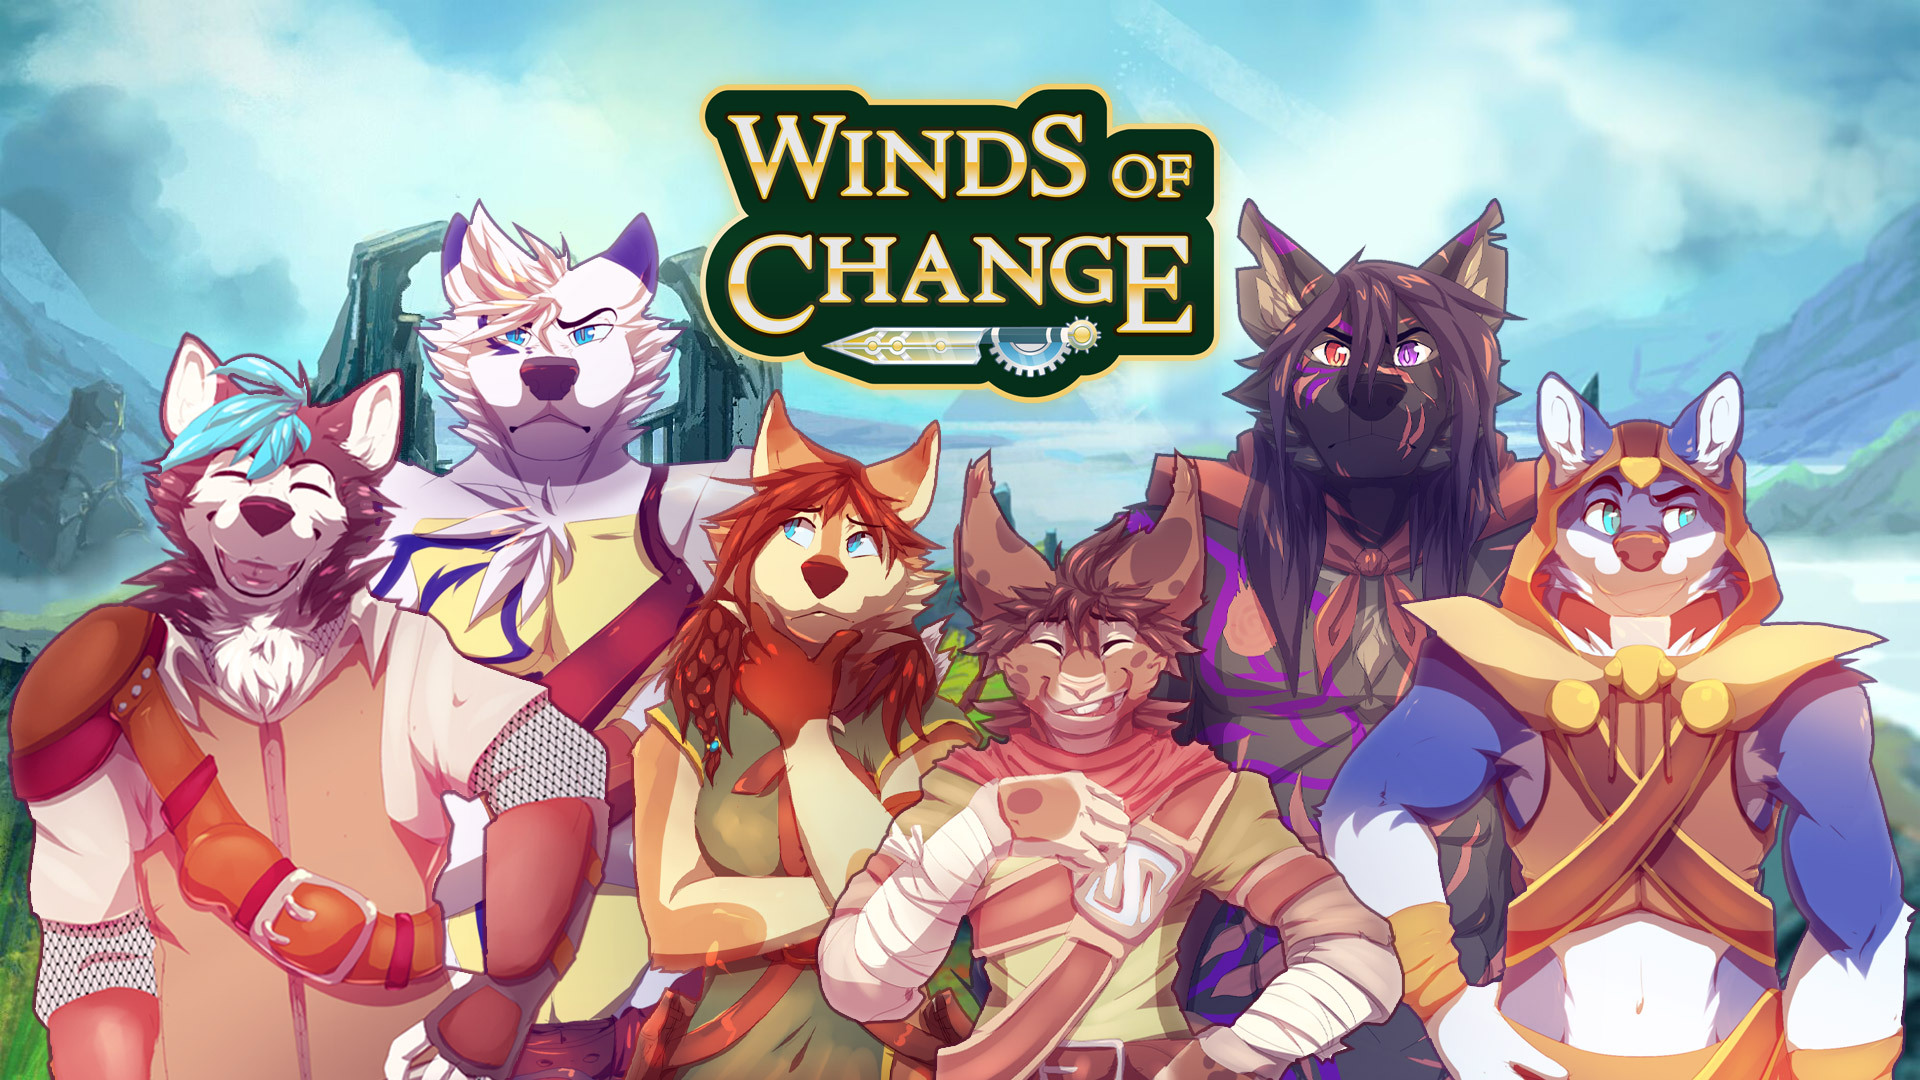 Winds of Change - Metacritic